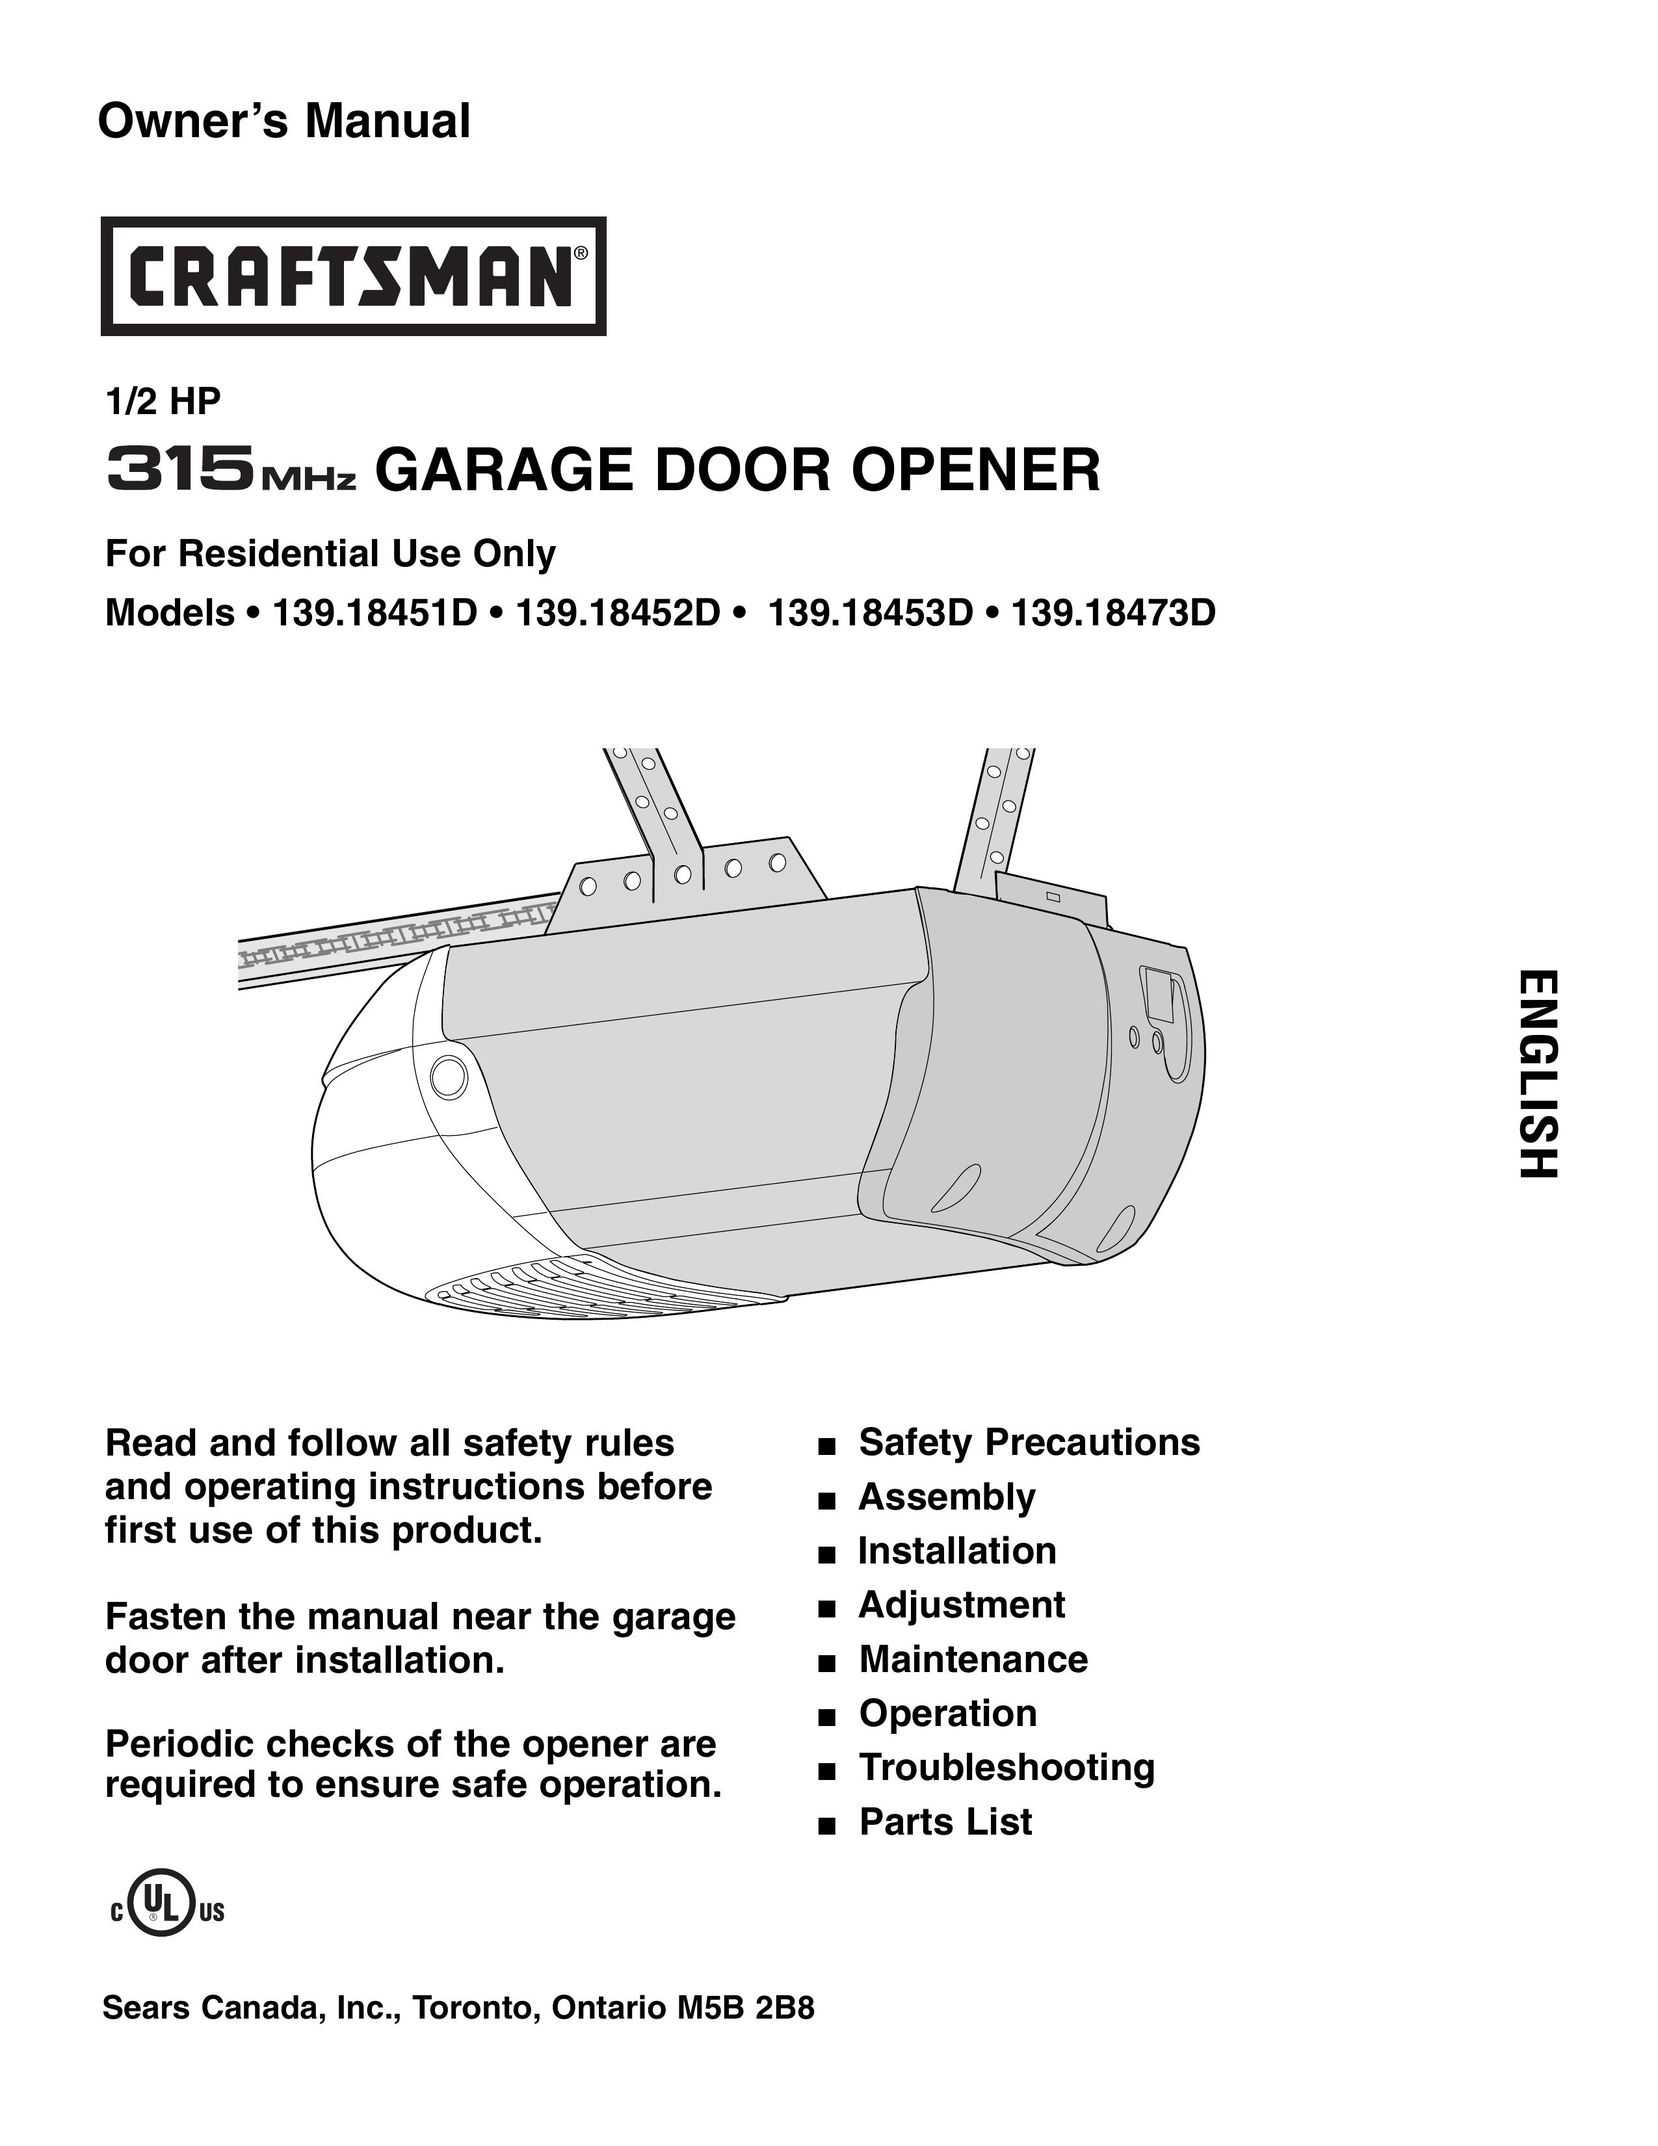 Craftsman 139.18453D Garage Door Opener User Manual